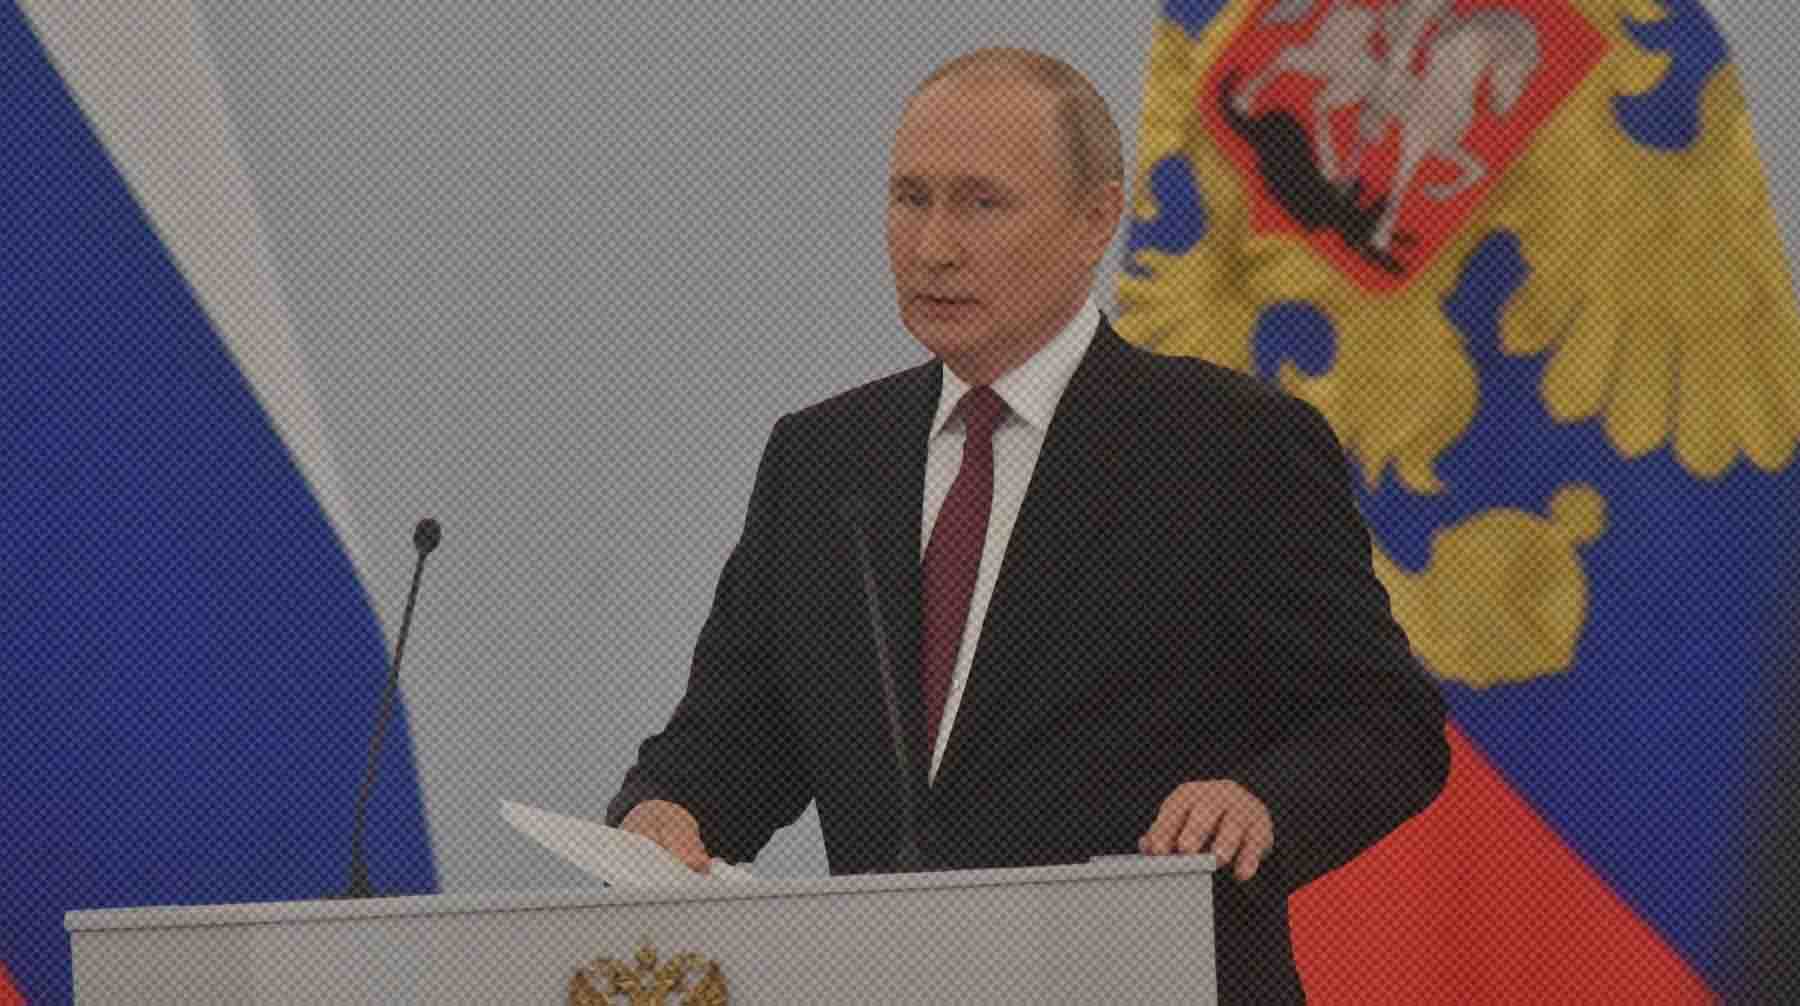 Dailystorm - Путин указал на бестолковщину при частичной мобилизации и потребовал от губернаторов контролировать призыв